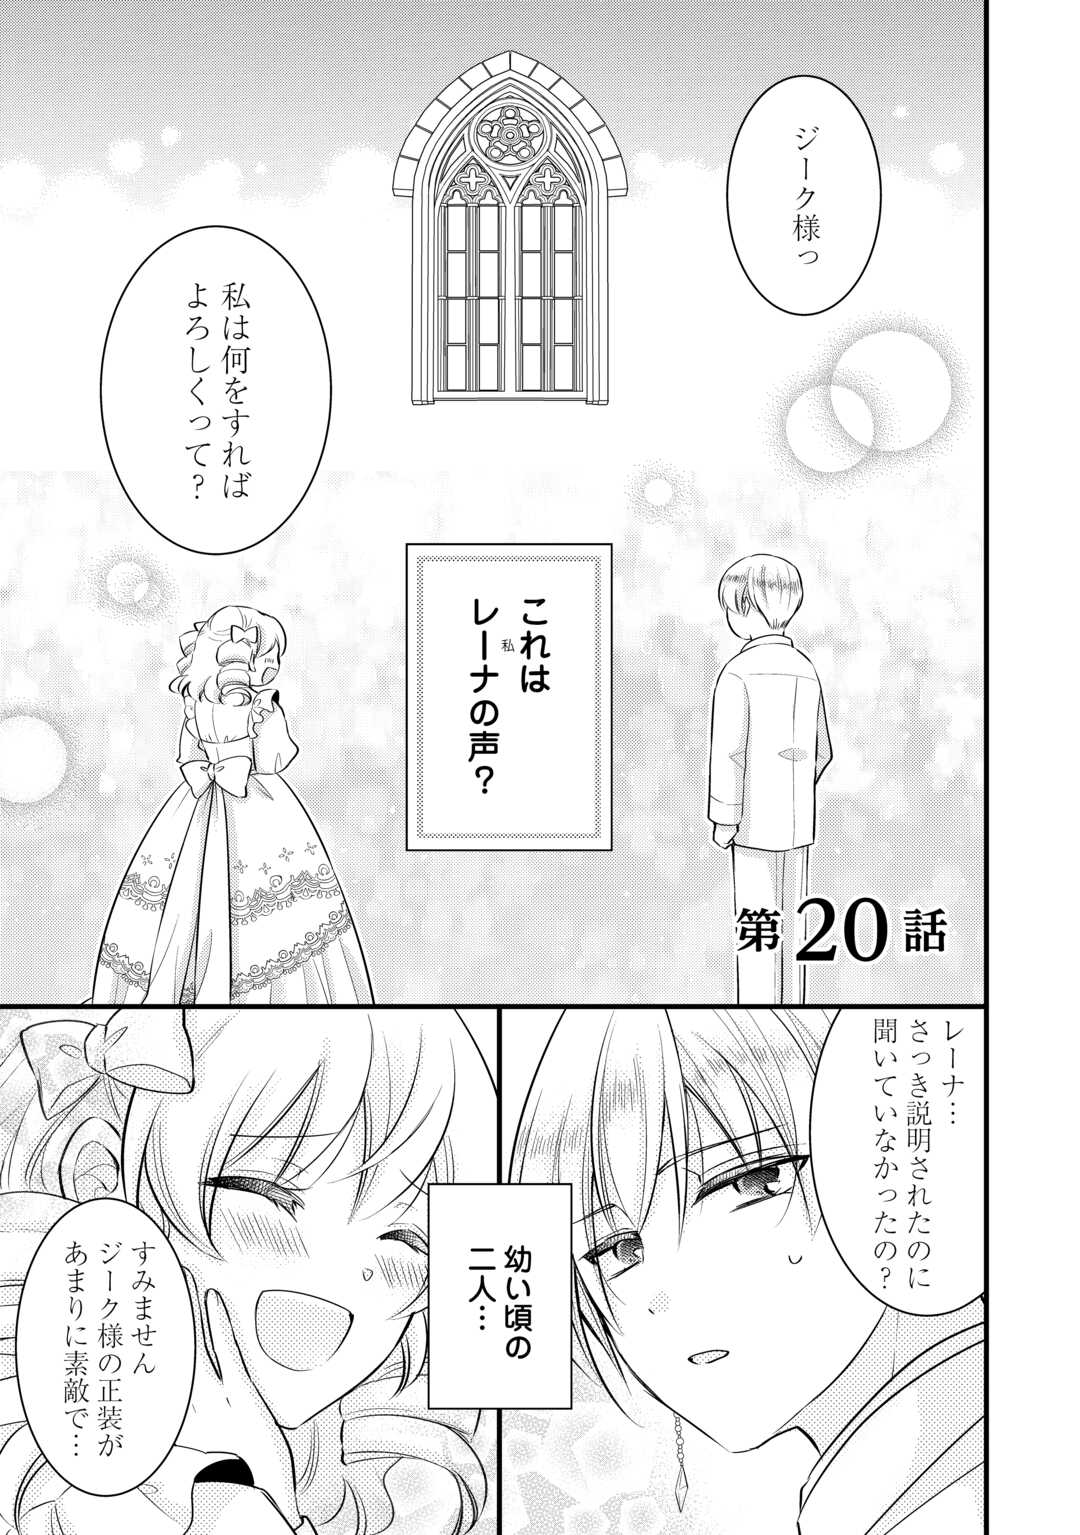 Akuyaku Reijou wa Heroine wo Ijimeteiru Baai de wa Nai - Chapter 20 - Page 1